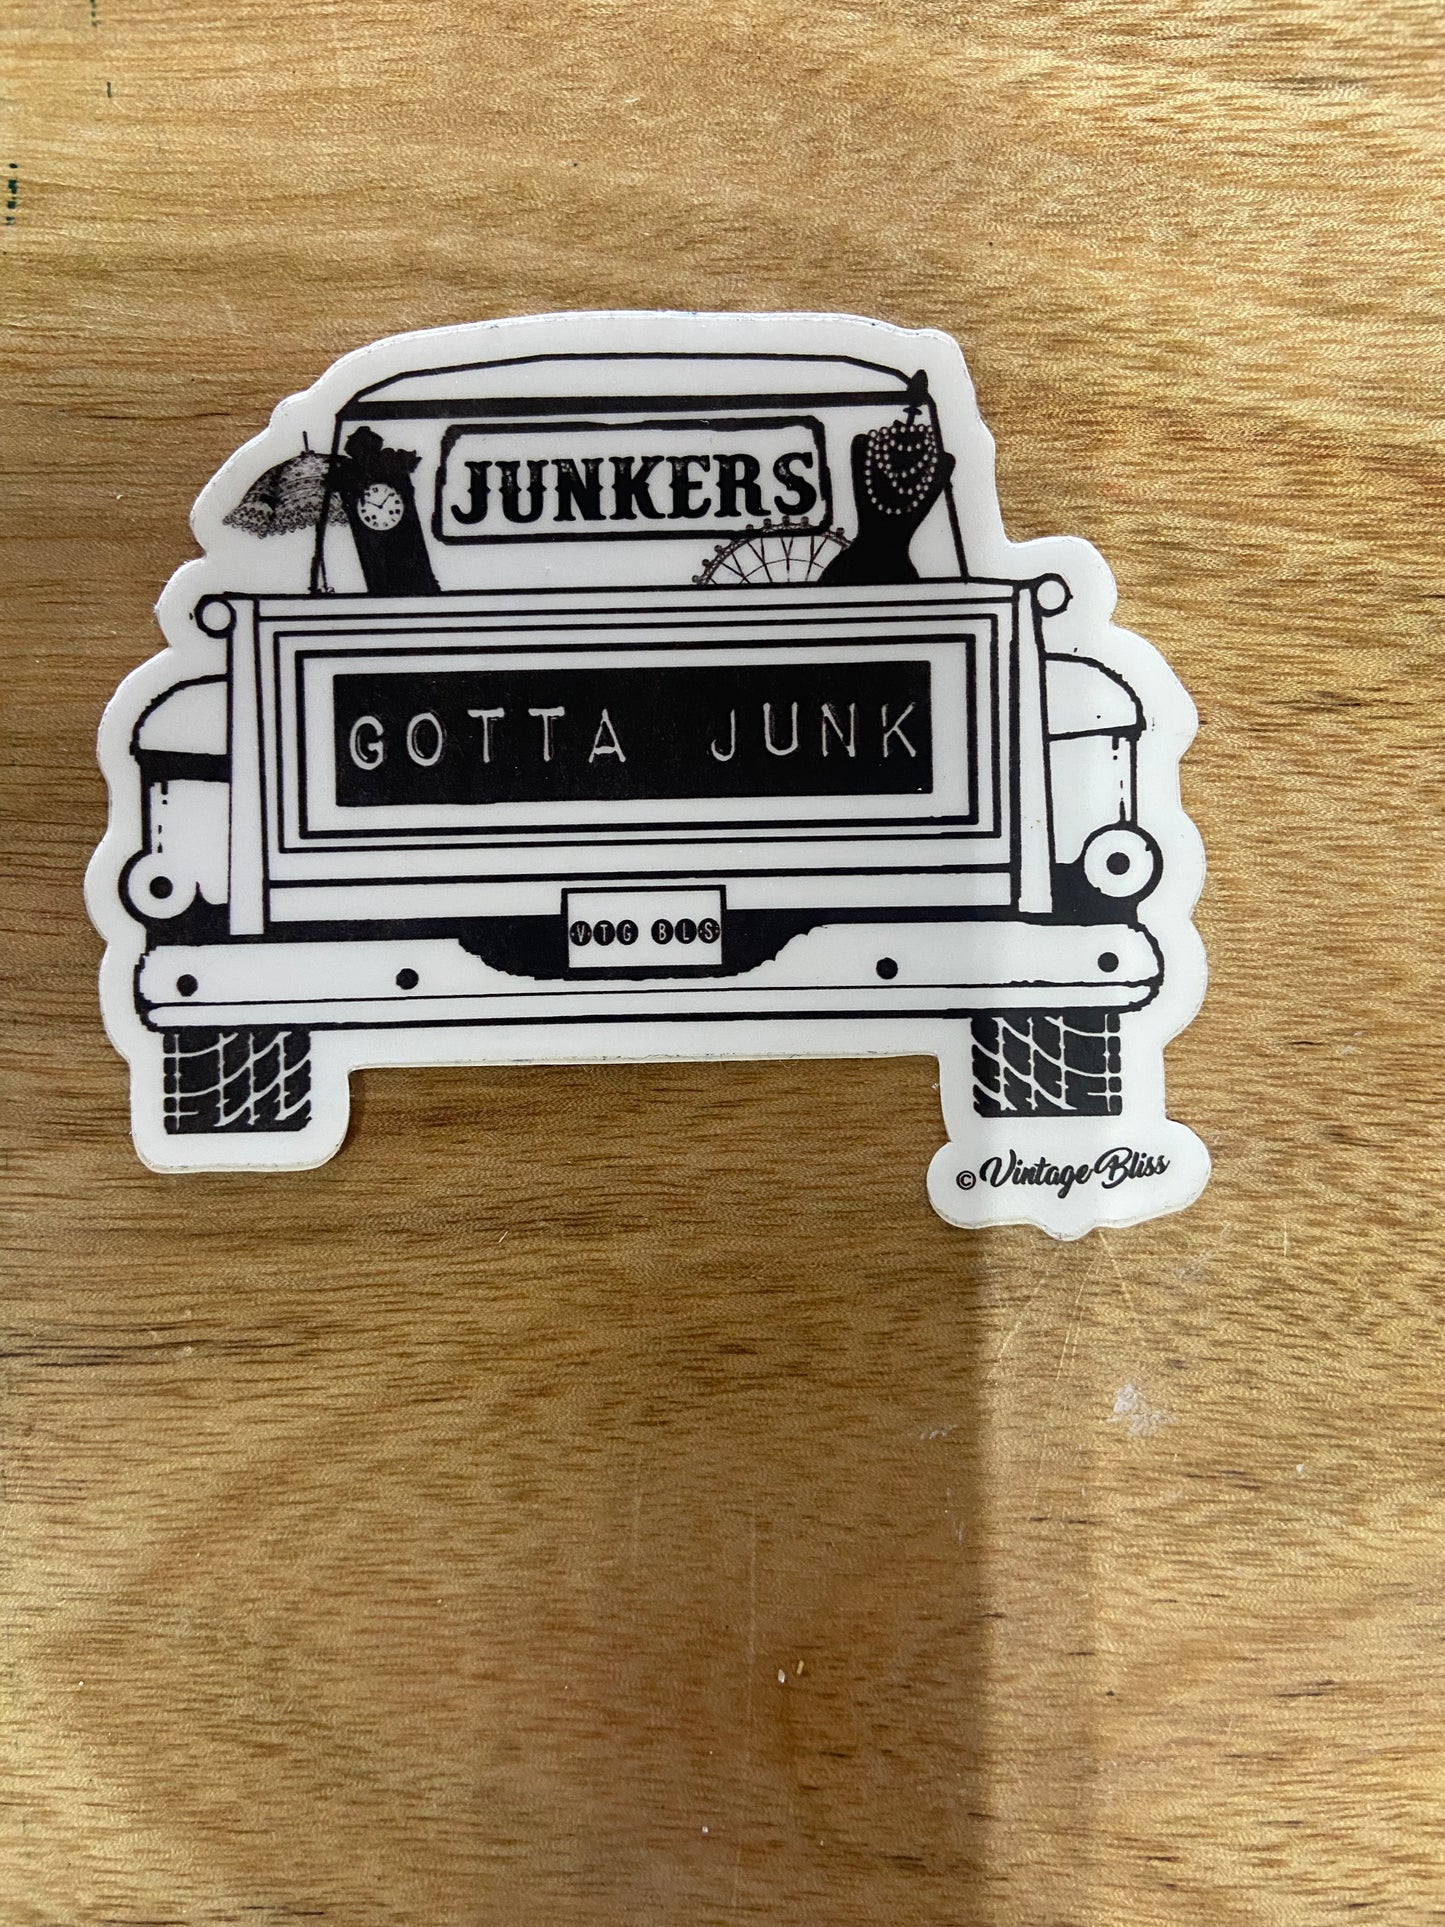 Junkets Gotta Junk sticker